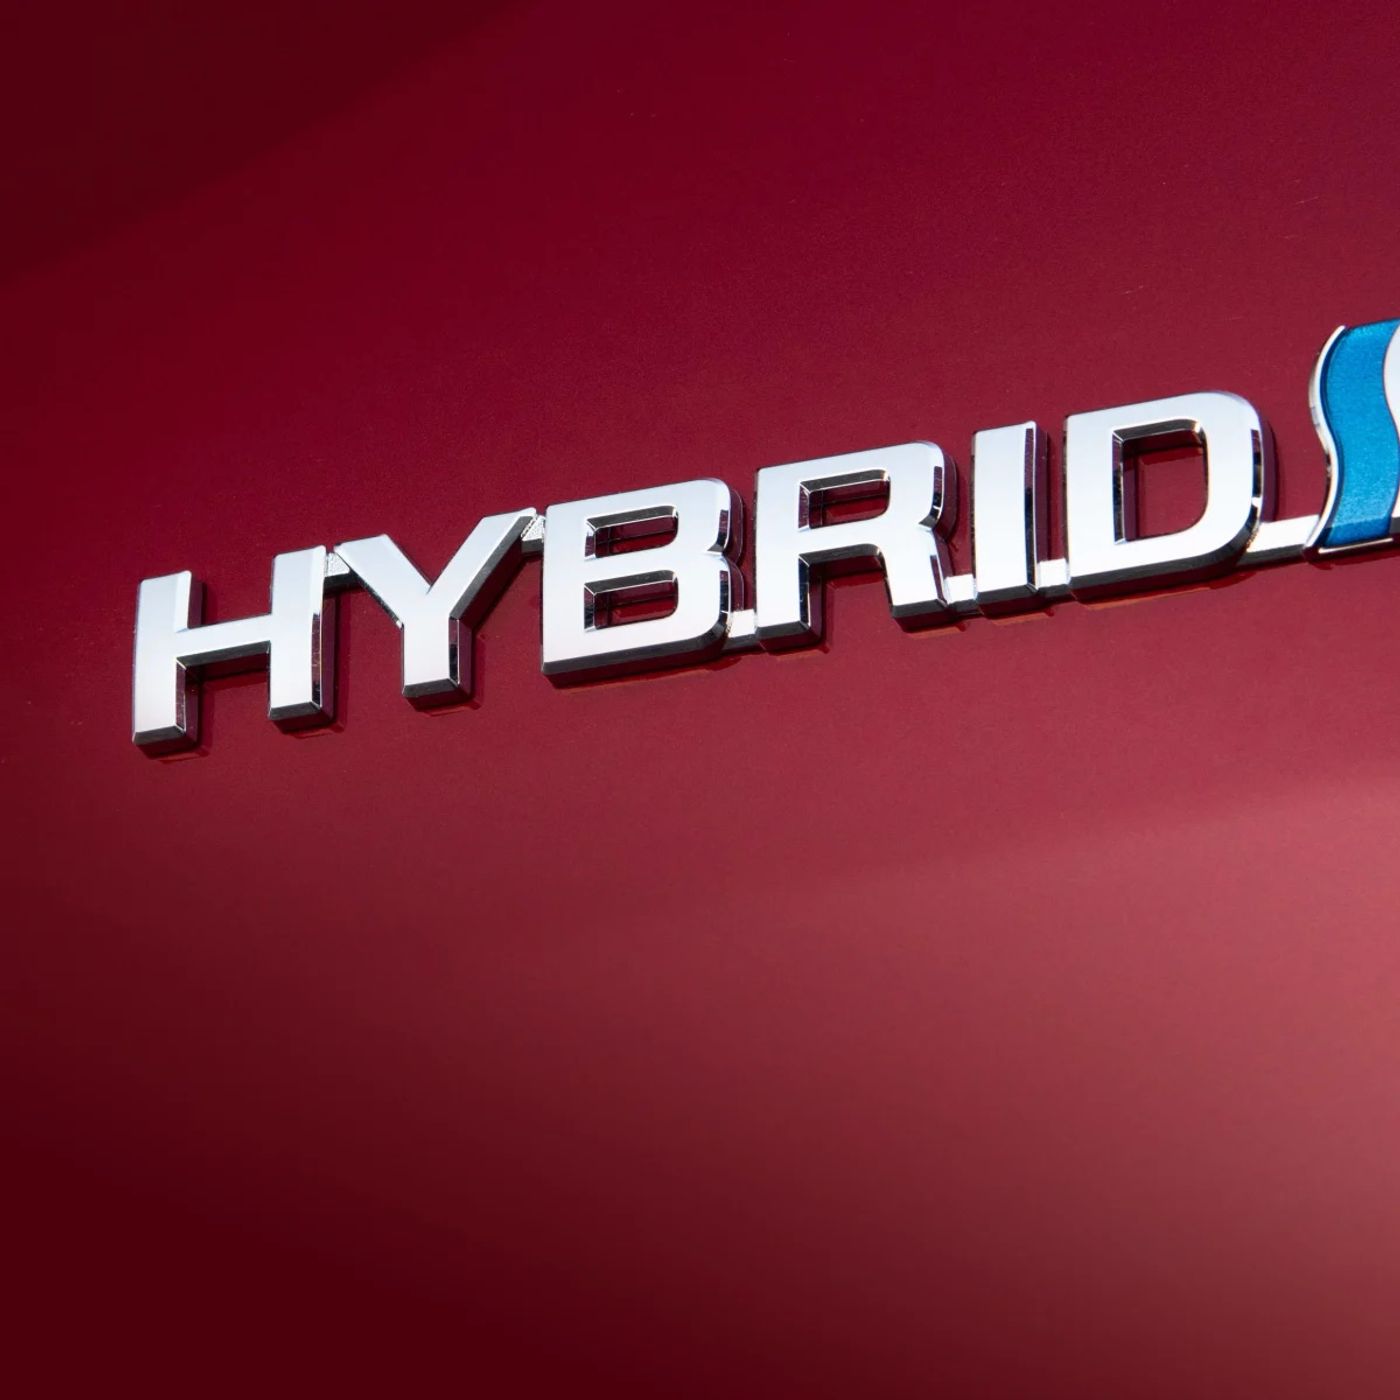 Episode 145 - Hybrid Vehicles